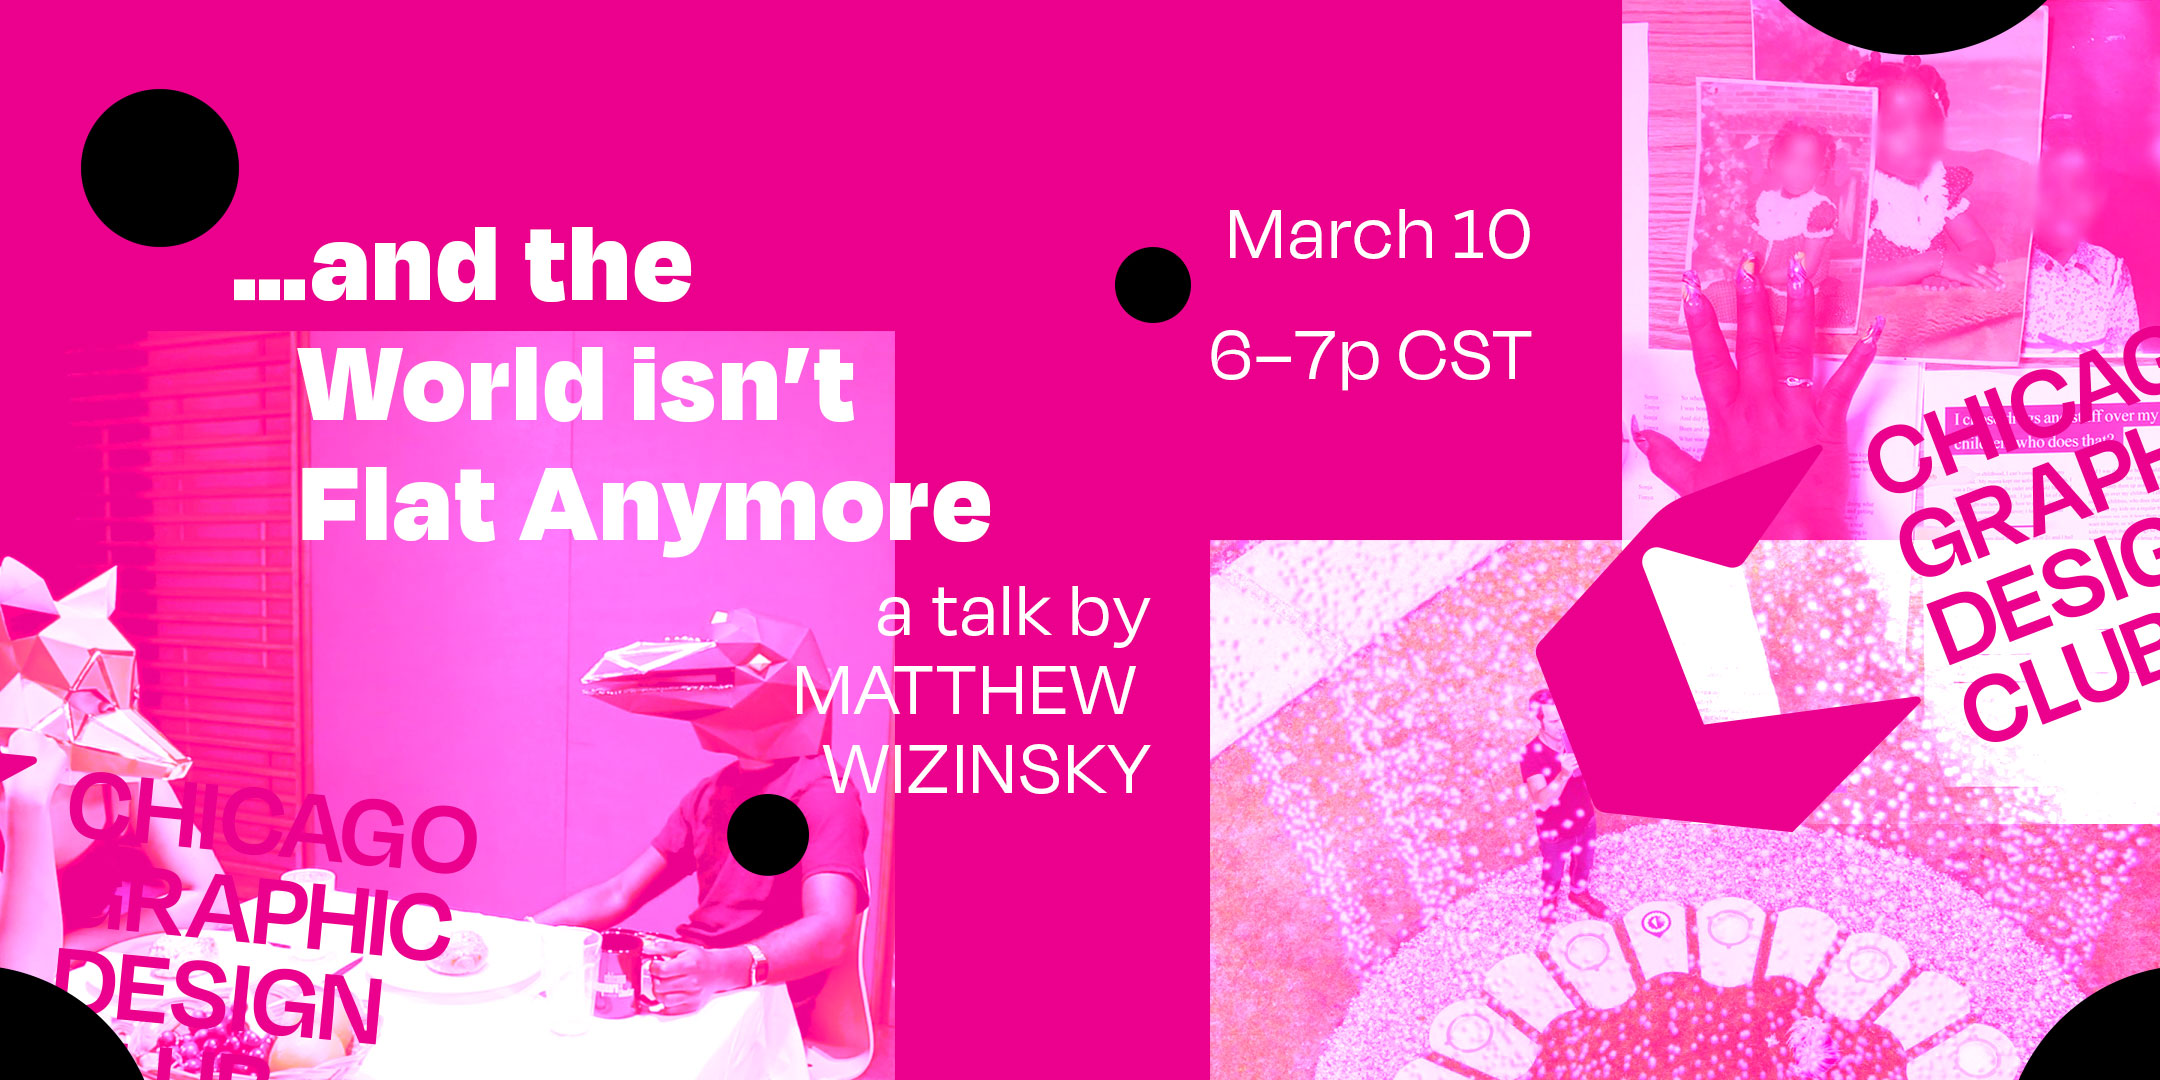 Matt Wizinsky Talk Chicago Graphic Design Club